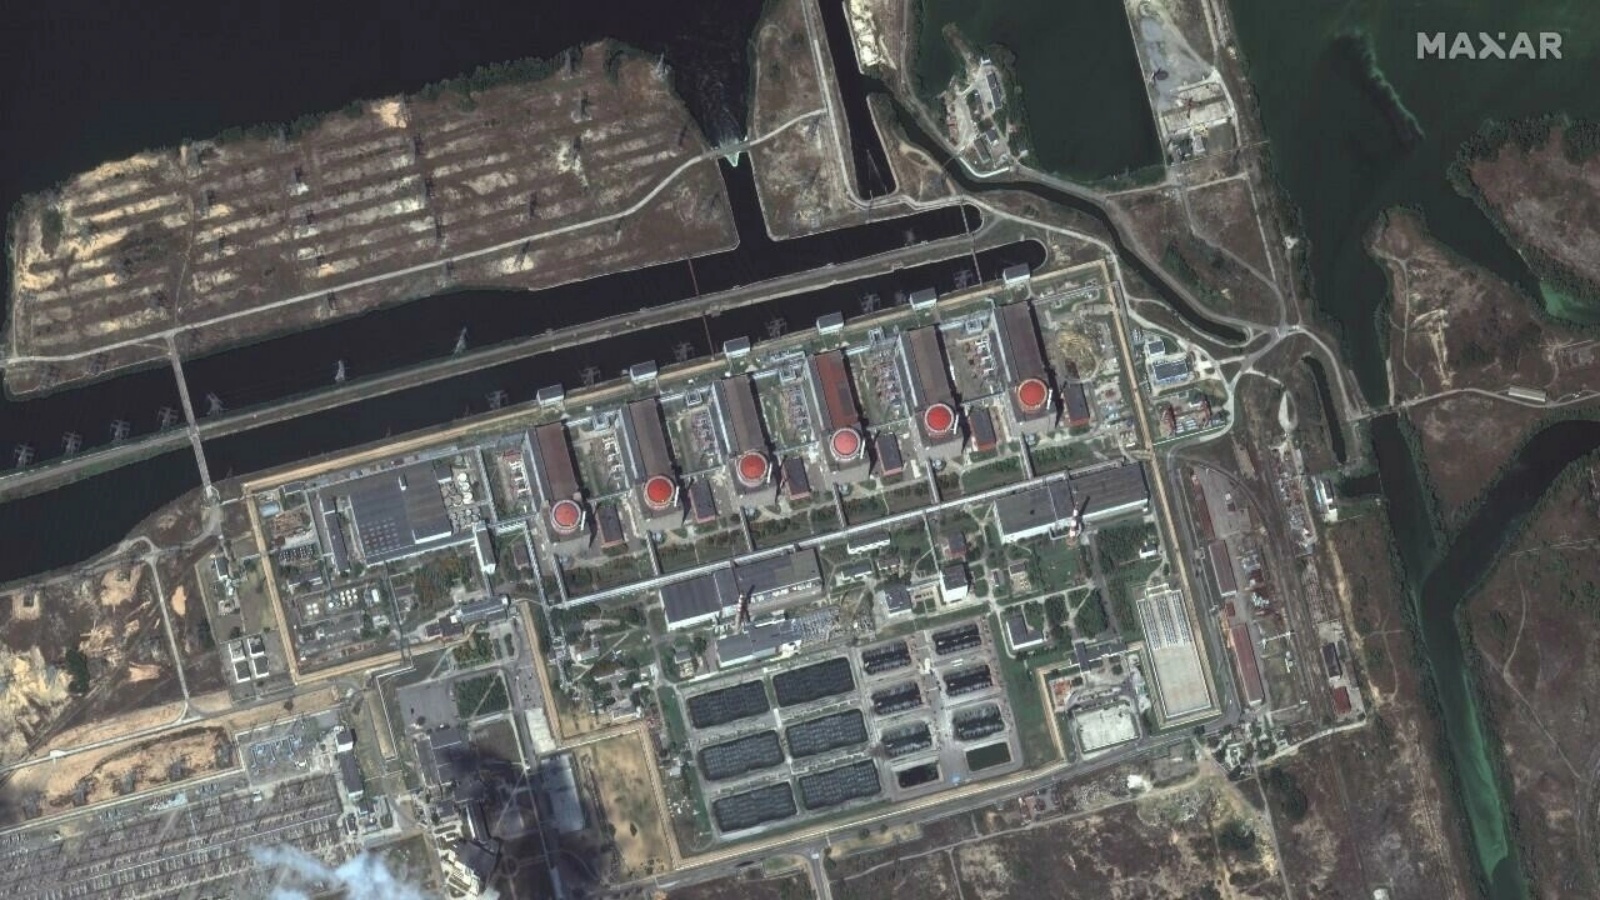 صورة أقمار صناعية لمحطة الطاقة النووية زابوريجيا في منطقة إنرهودار التي تسيطر عليها روسيا في شرق أوكرانيا ، وزعتها شركة Maxar Technologies ونشرت في 19 أغسطس 2022.